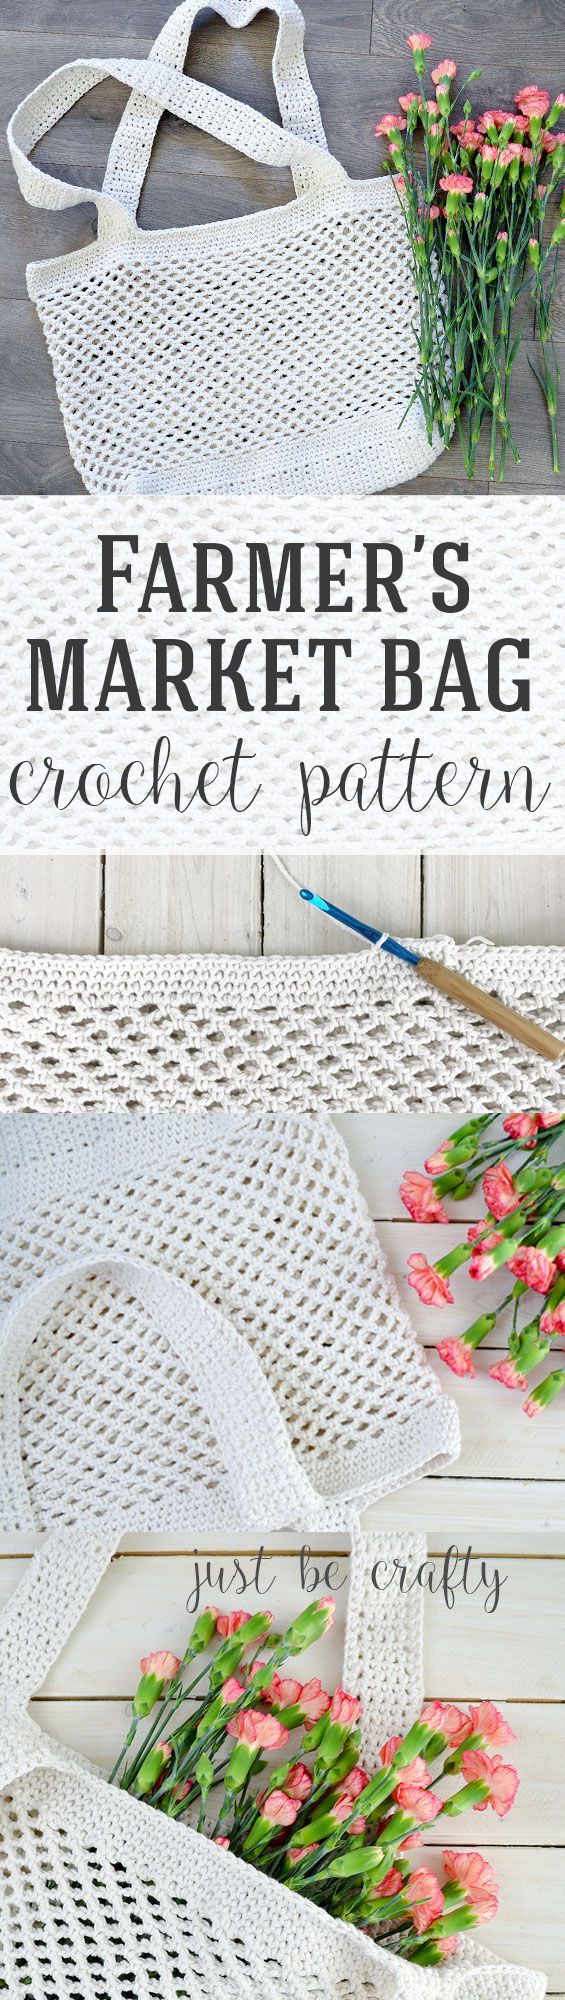 Crochet Farmer's Market Bag Pattern - Free Pattern by